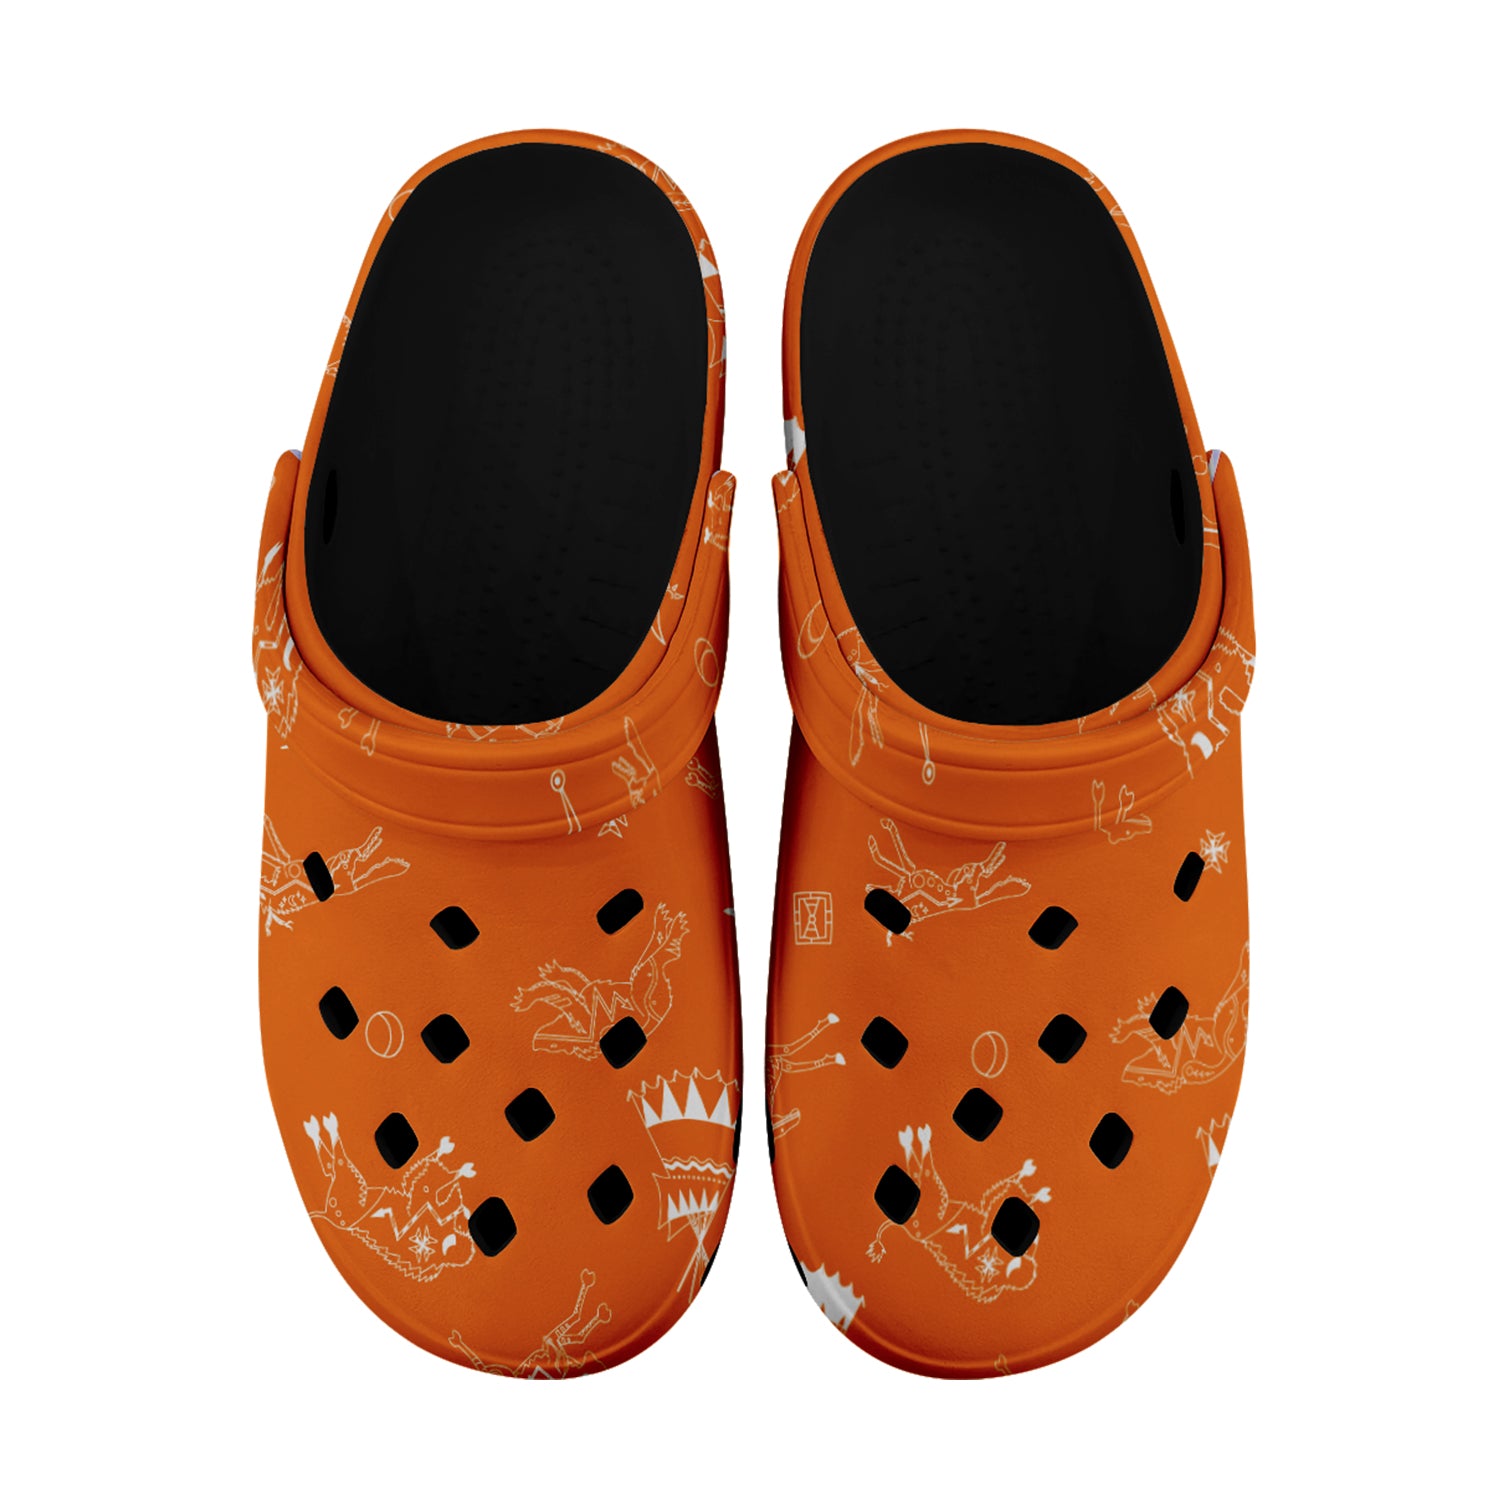 Ledger Dabbles Orange Muddies Unisex Clog Shoes